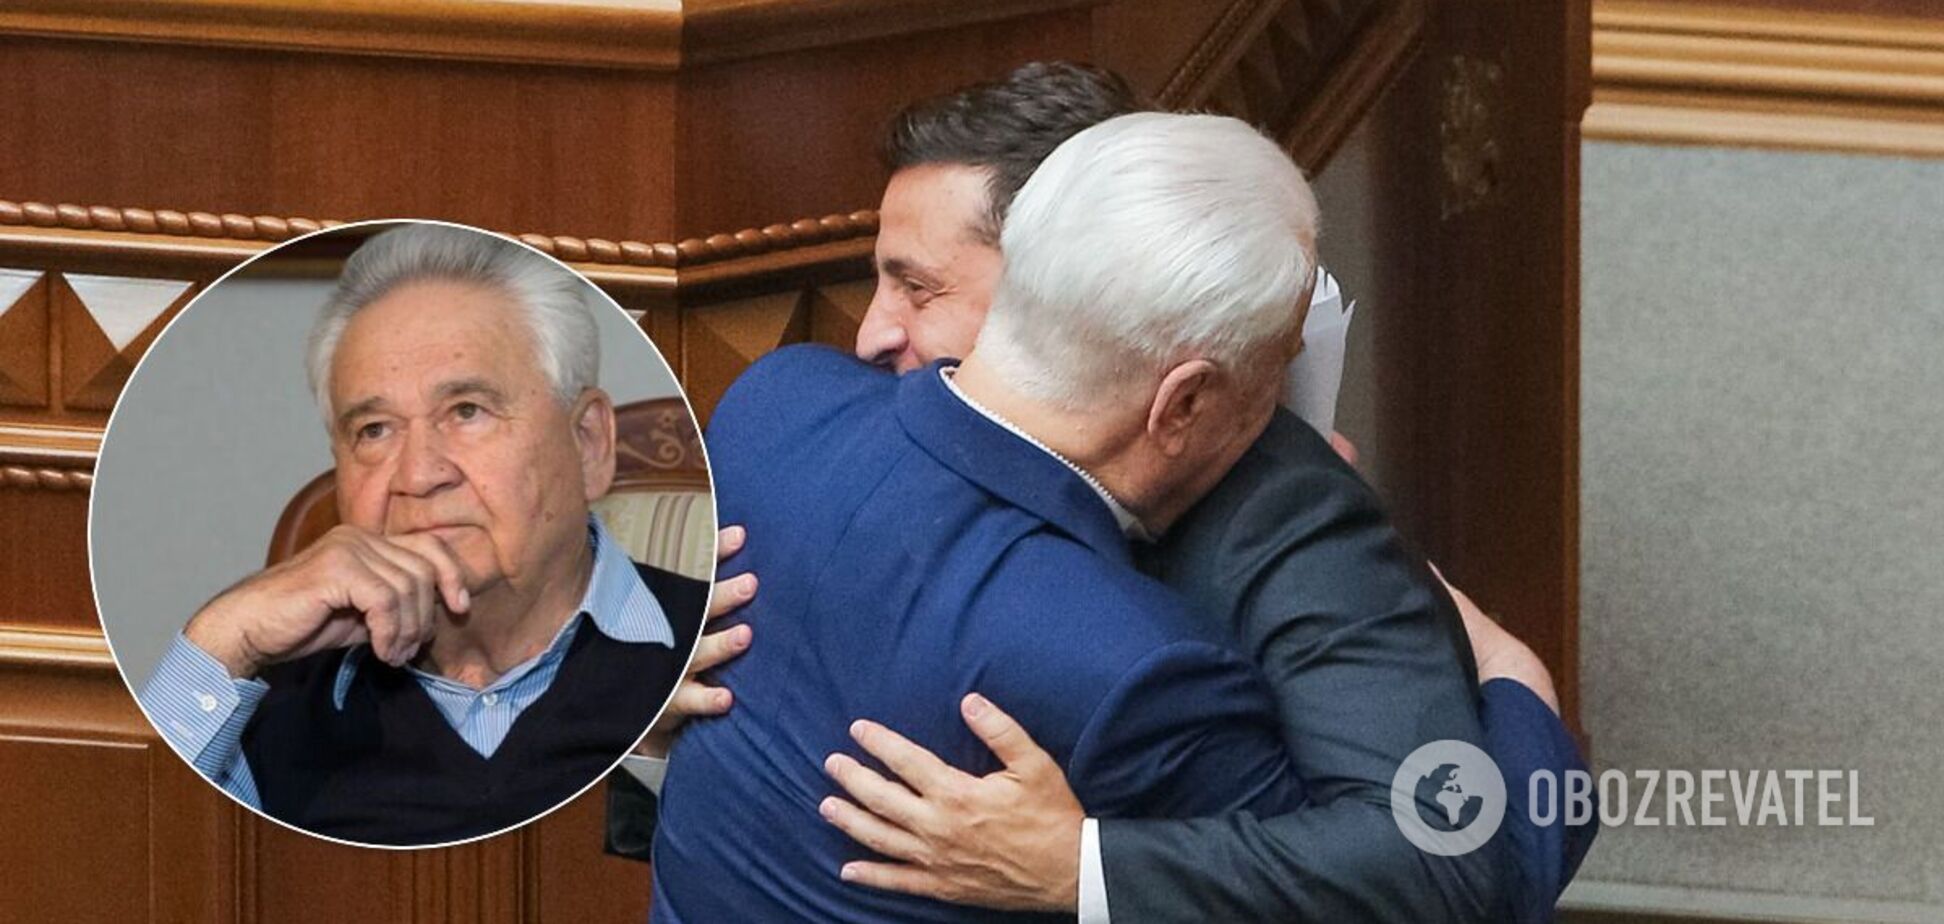 Зеленський розповів, як 86-річний Кравчук і 87-річний Фокін 'піднімають' переговори щодо Донбасу